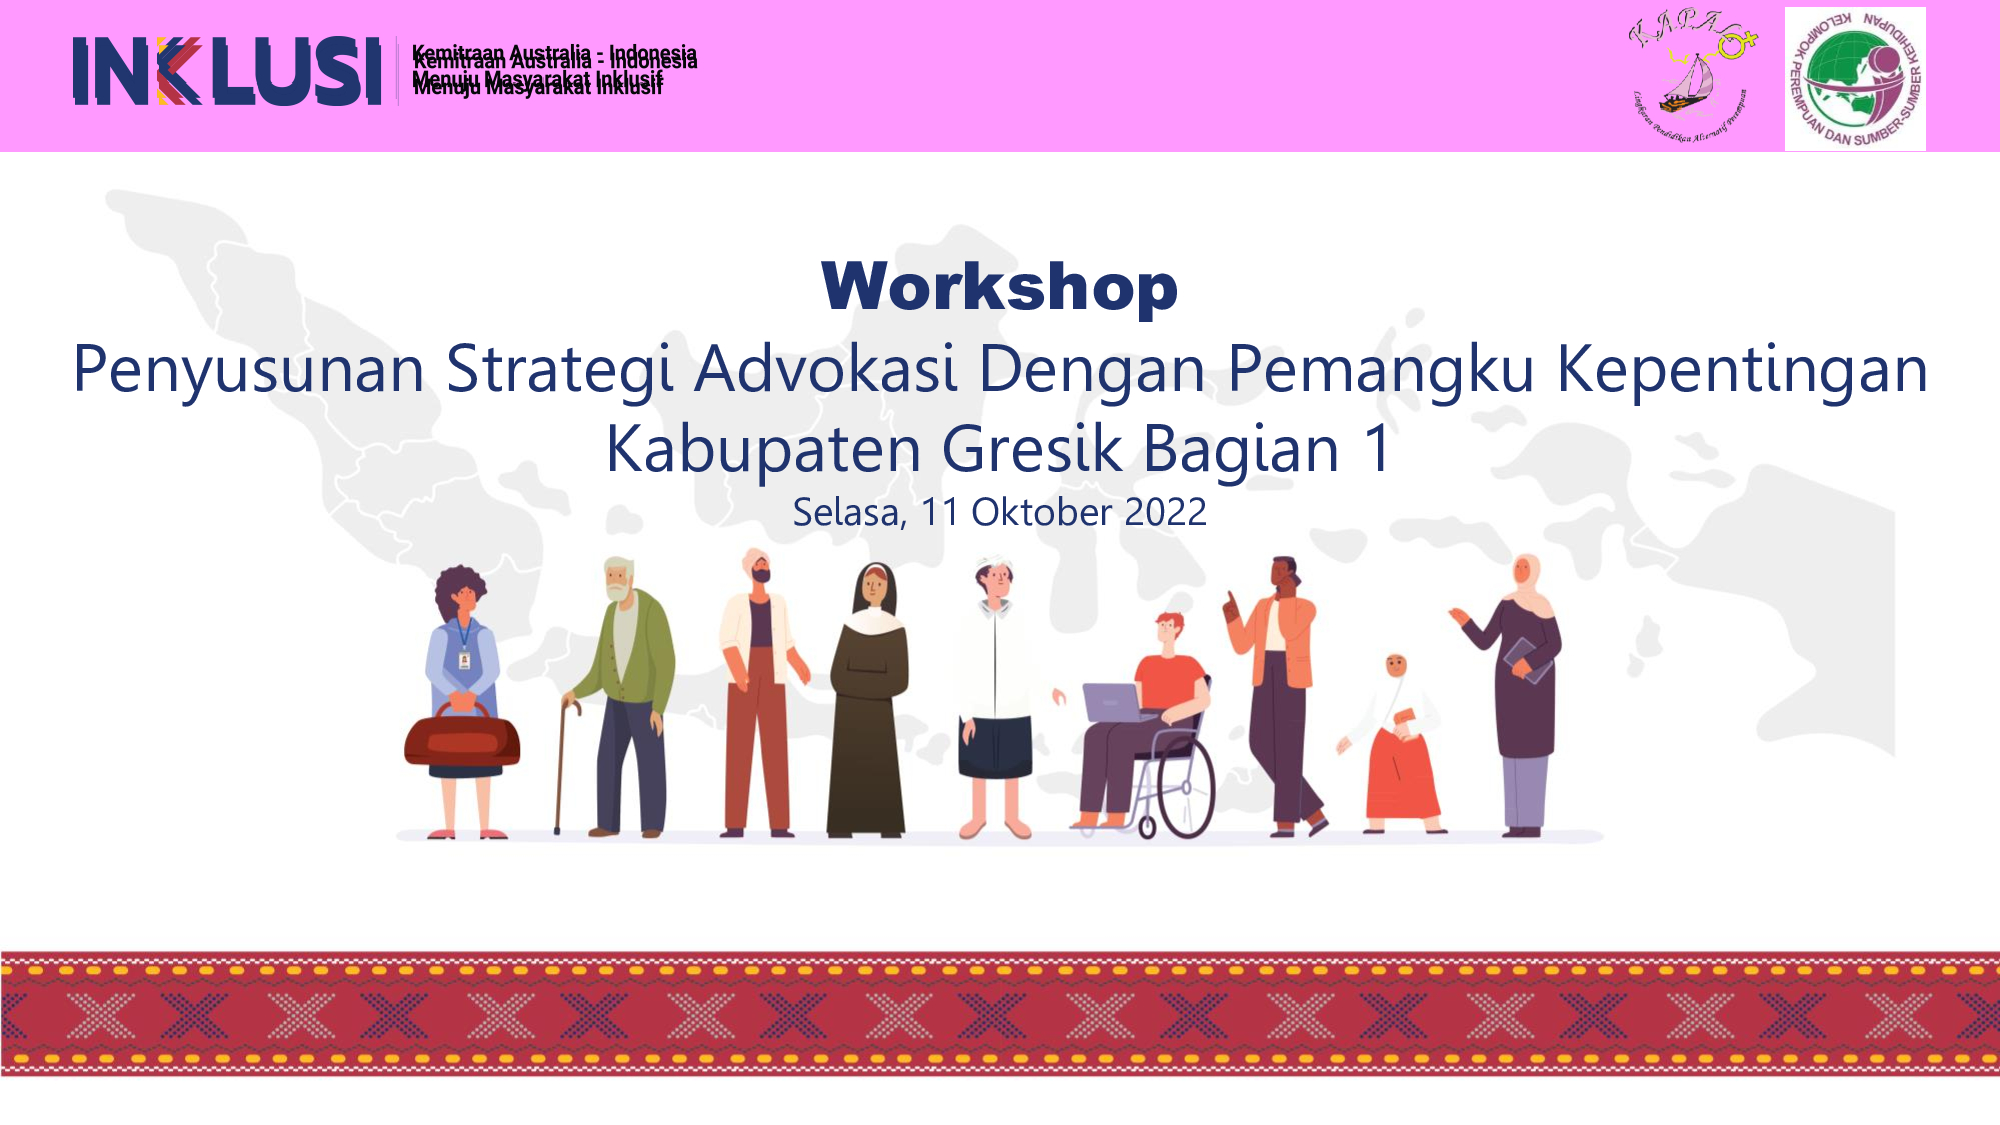 Workshop Penyusunan Strategi Advokasi Pemangku Kepentingan Program INKLUSI Kab.Gresik (1)